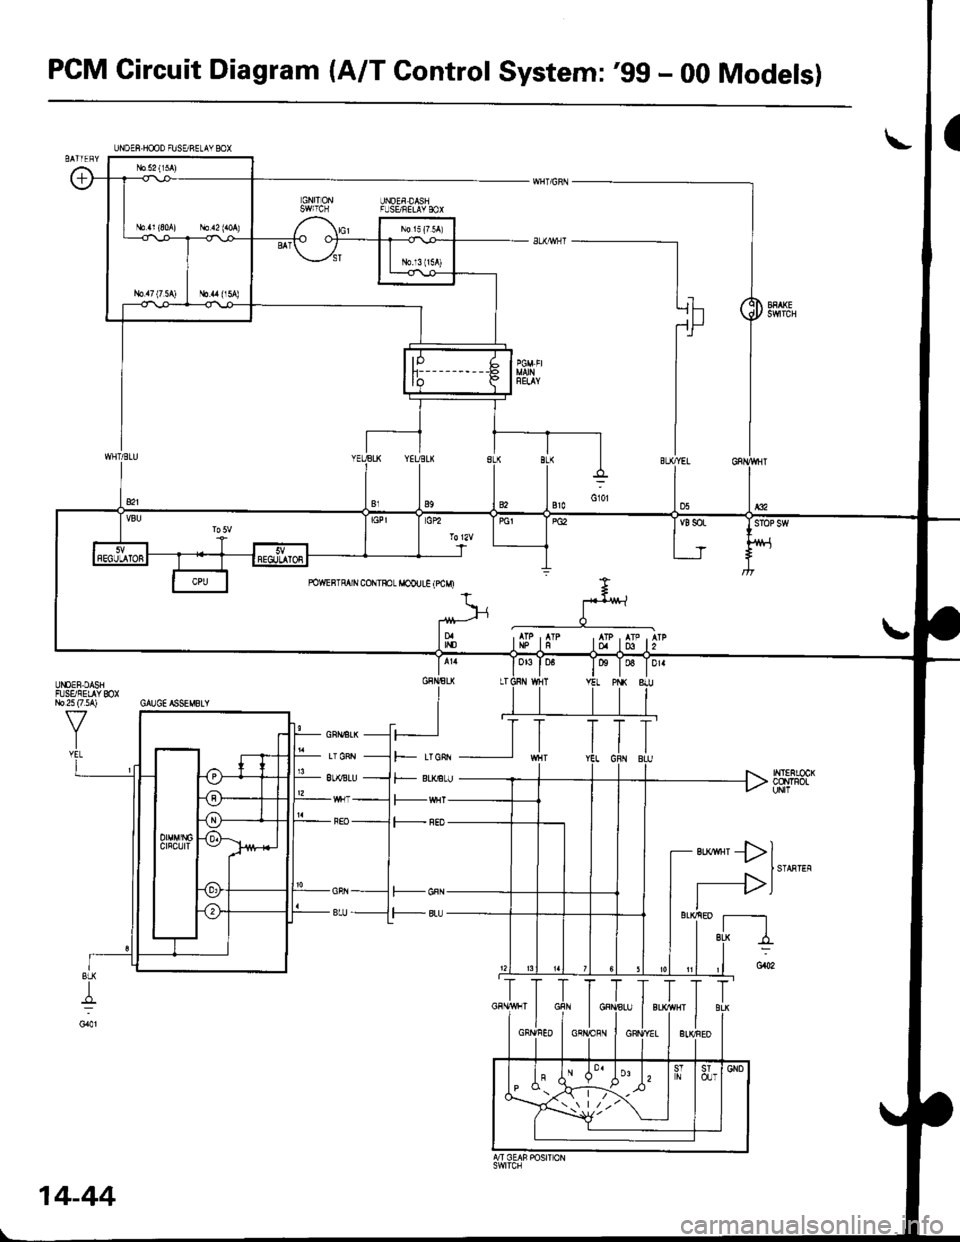 HONDA CIVIC 1996 6.G Workshop Manual PCM Gircuit Diagram (A/T Gontrol System:99 - 00 Models)
UNOEF DASIFL]SE/FELAY BOX
ta T06 T Dr.
INT€RLOCKCCNTFOLuN|l
ert*rll
I STARTEF
r-->lIl__ sL!
I
UISEF,DASHFISSIEL YmXr,Jo 25 (7 5A) GAUGE ISSEM